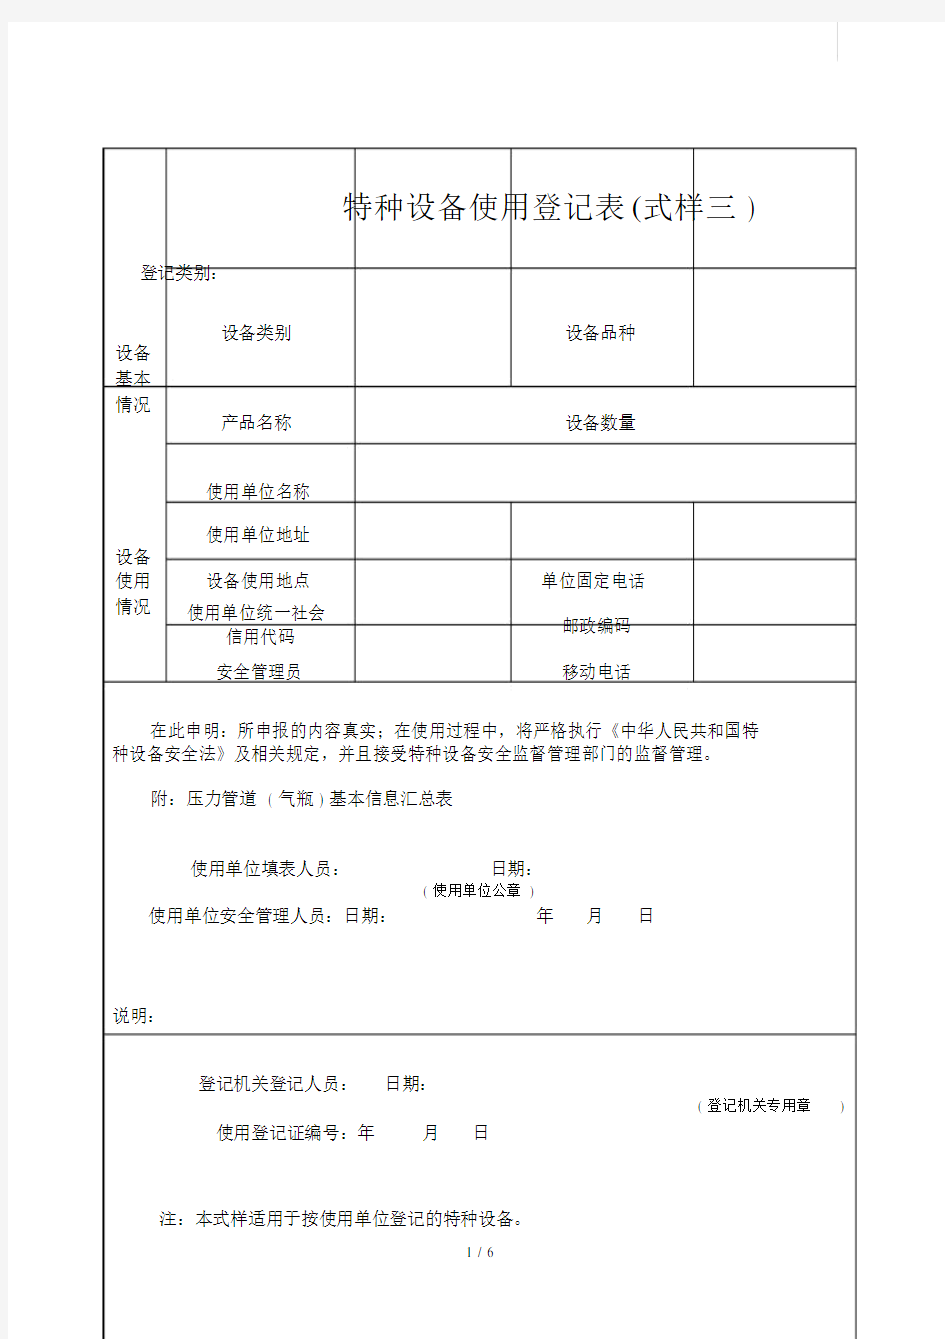 (完整word版)特种设备使用登记表(式样三).doc